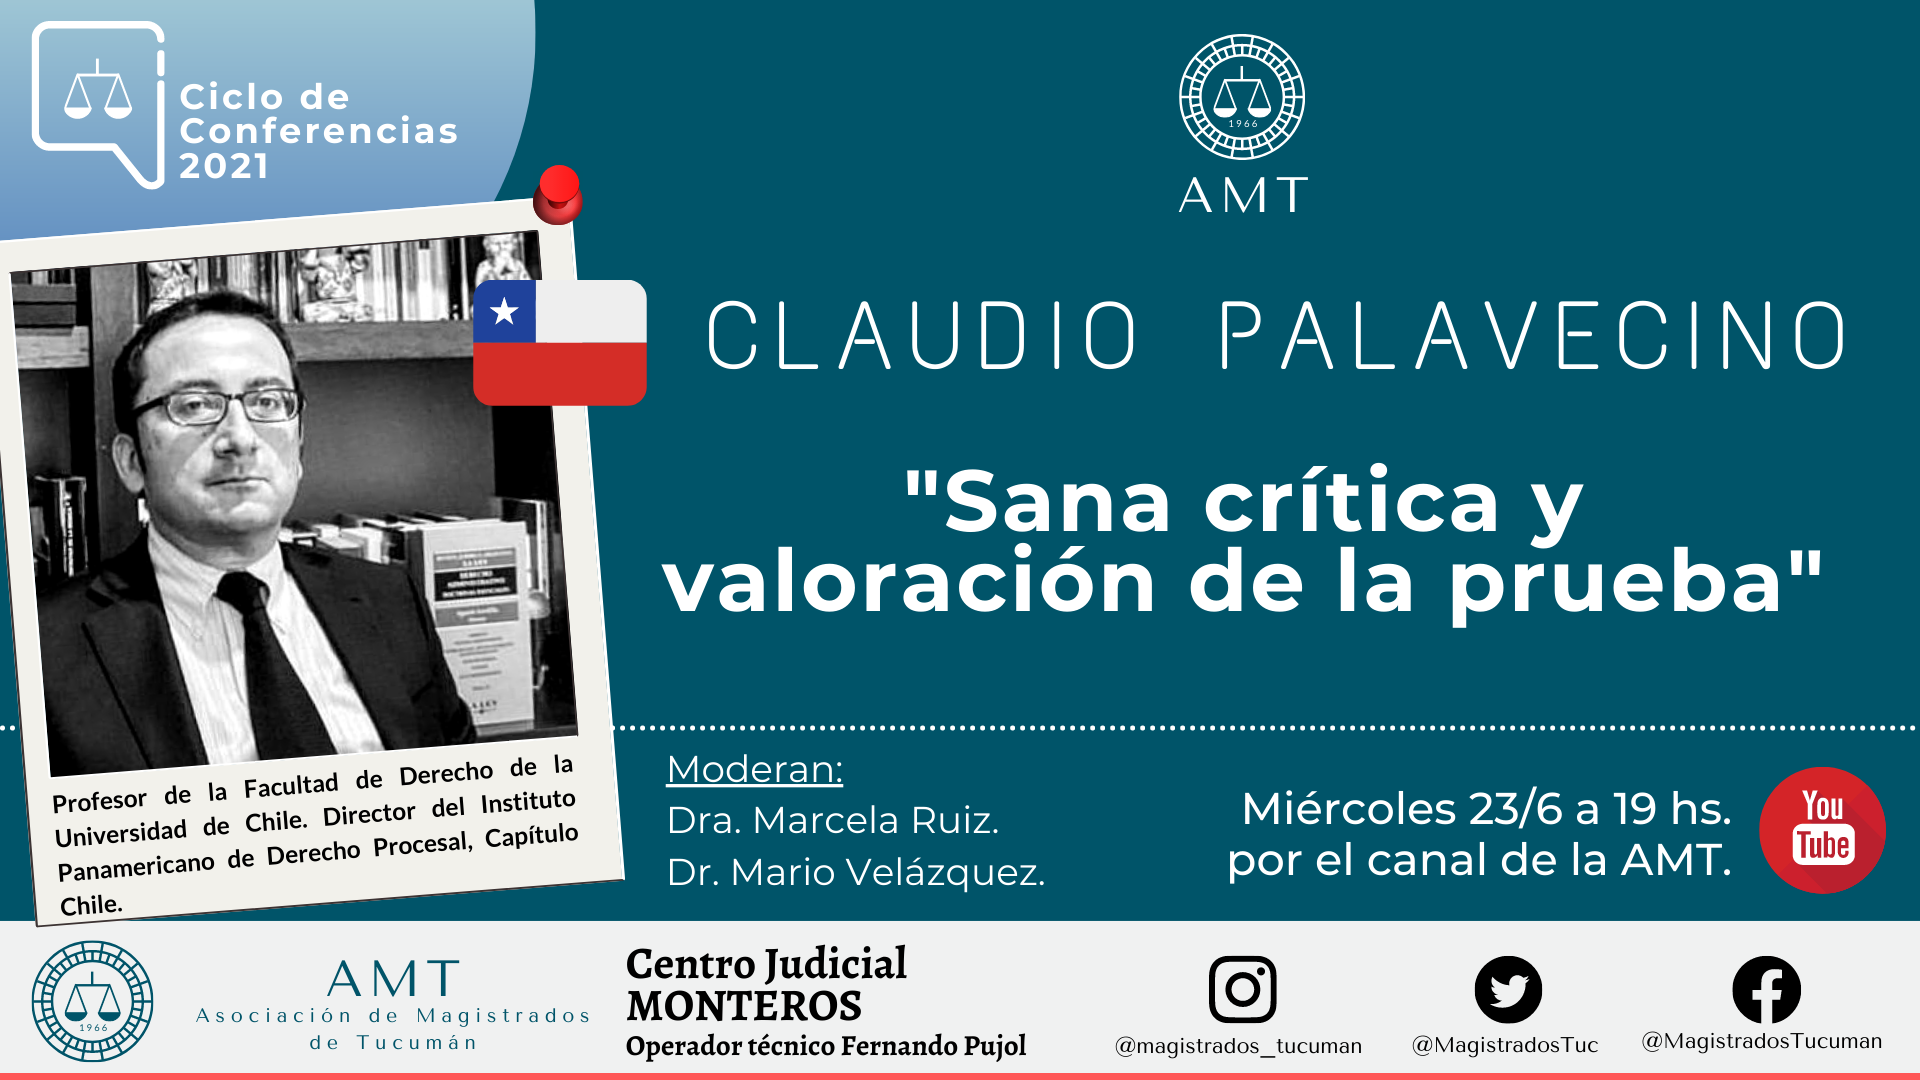 Vuelva a ver la conferencia de Claudio Palavecino «Sana crítica y valoración de la prueba»